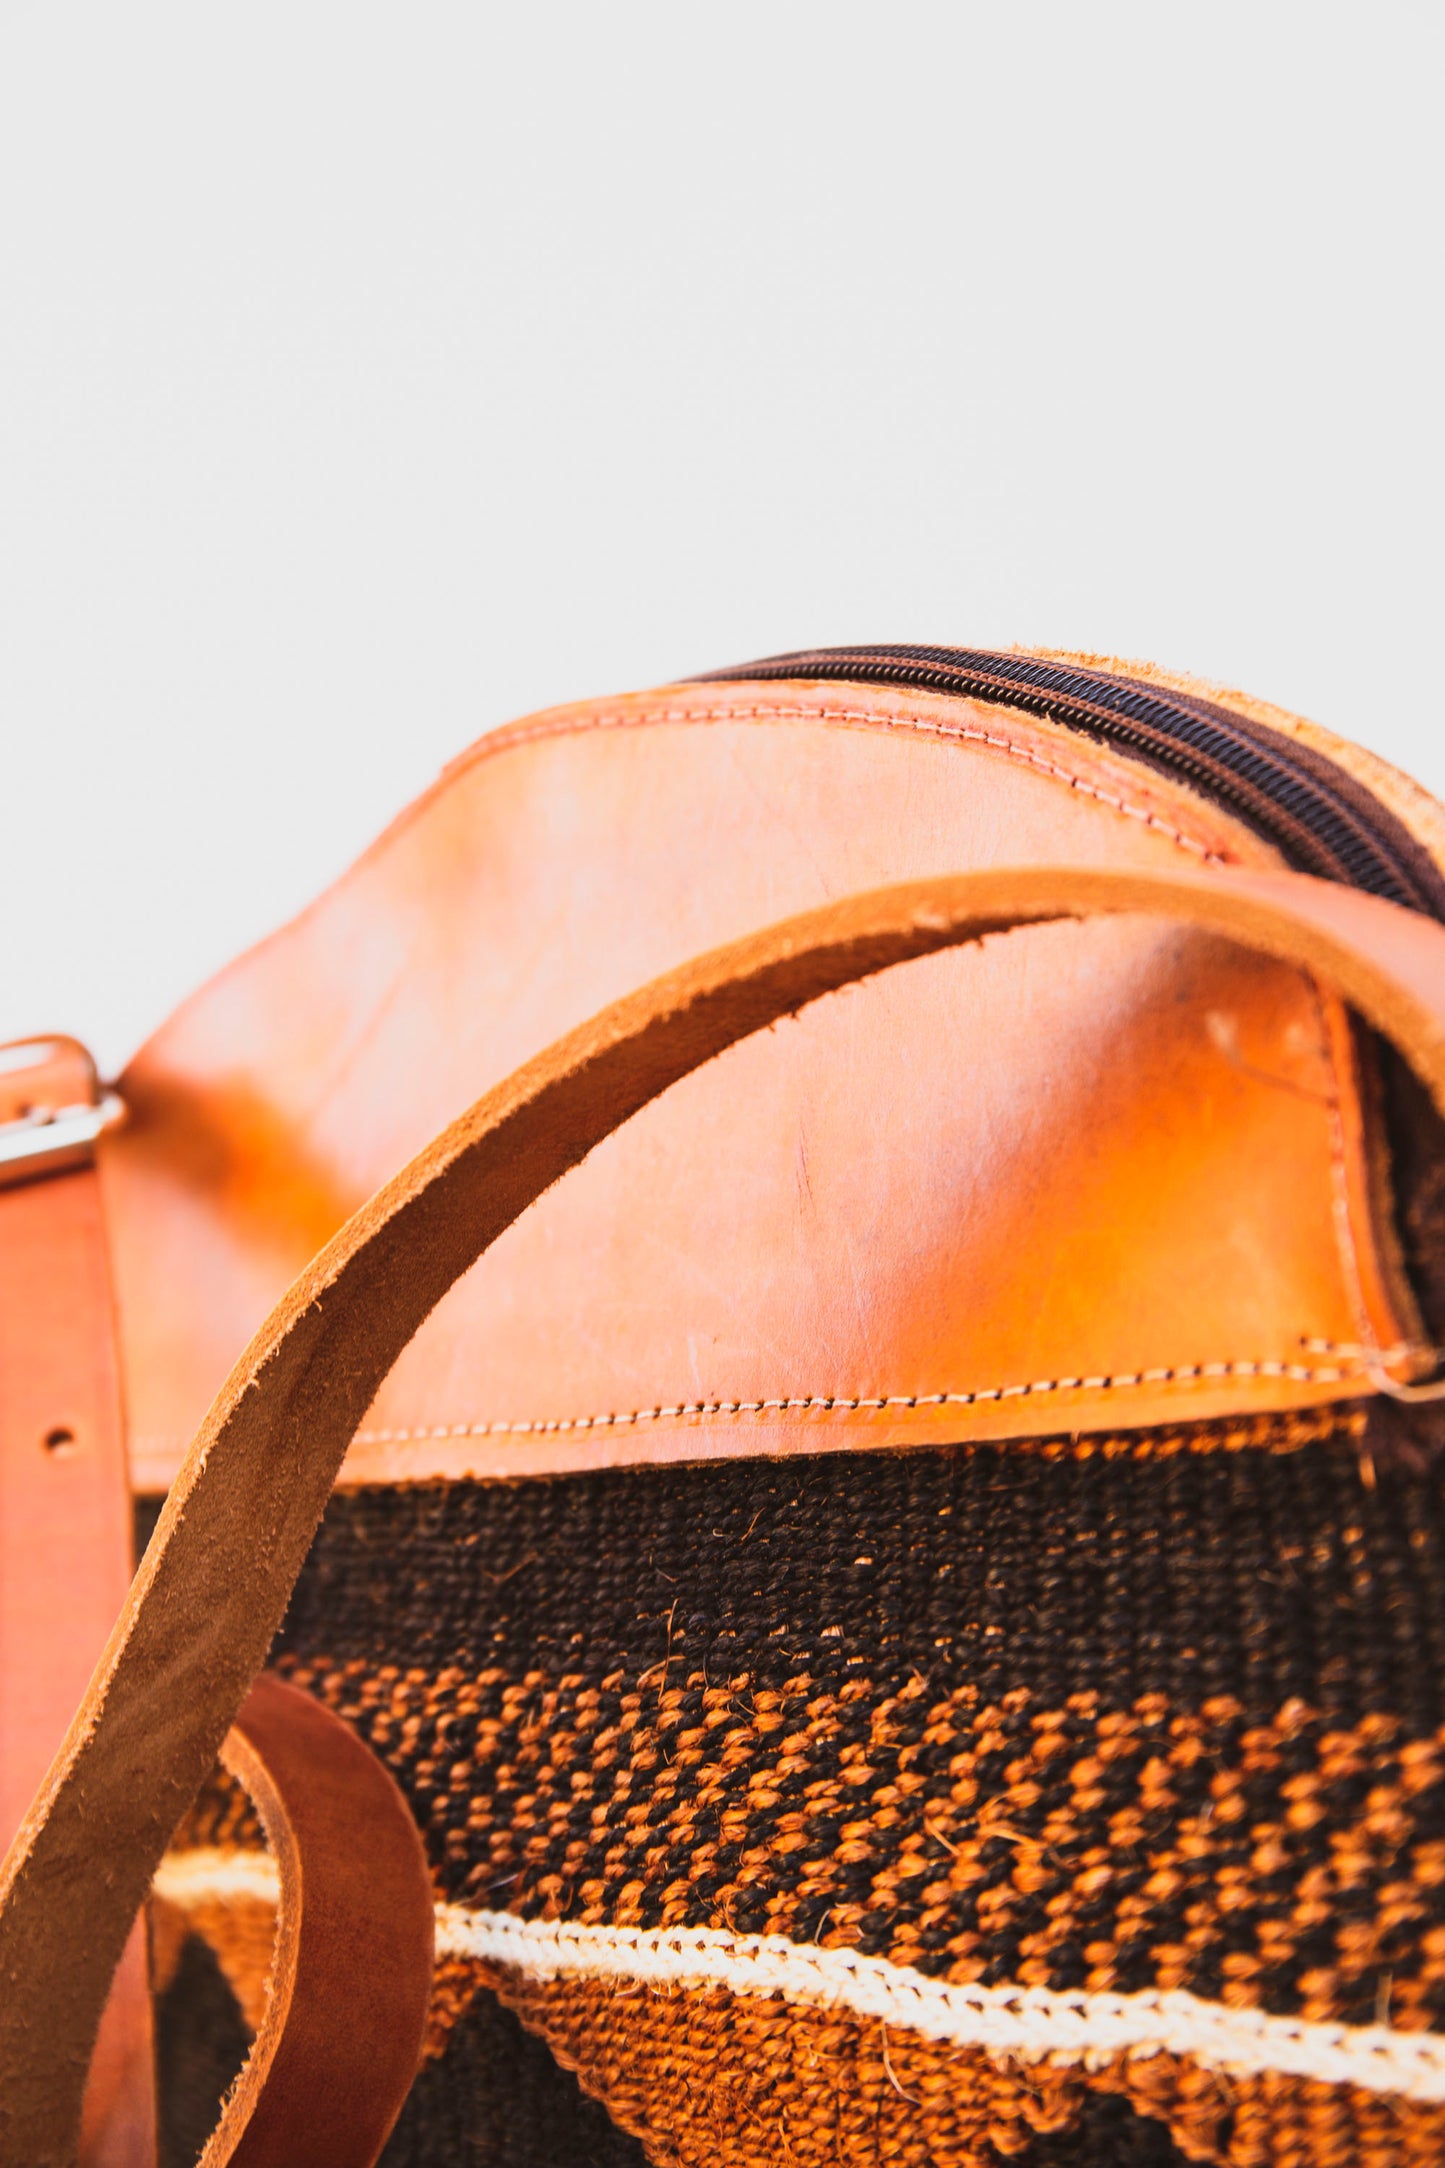 Woven Sisal Handbag with Leather Top